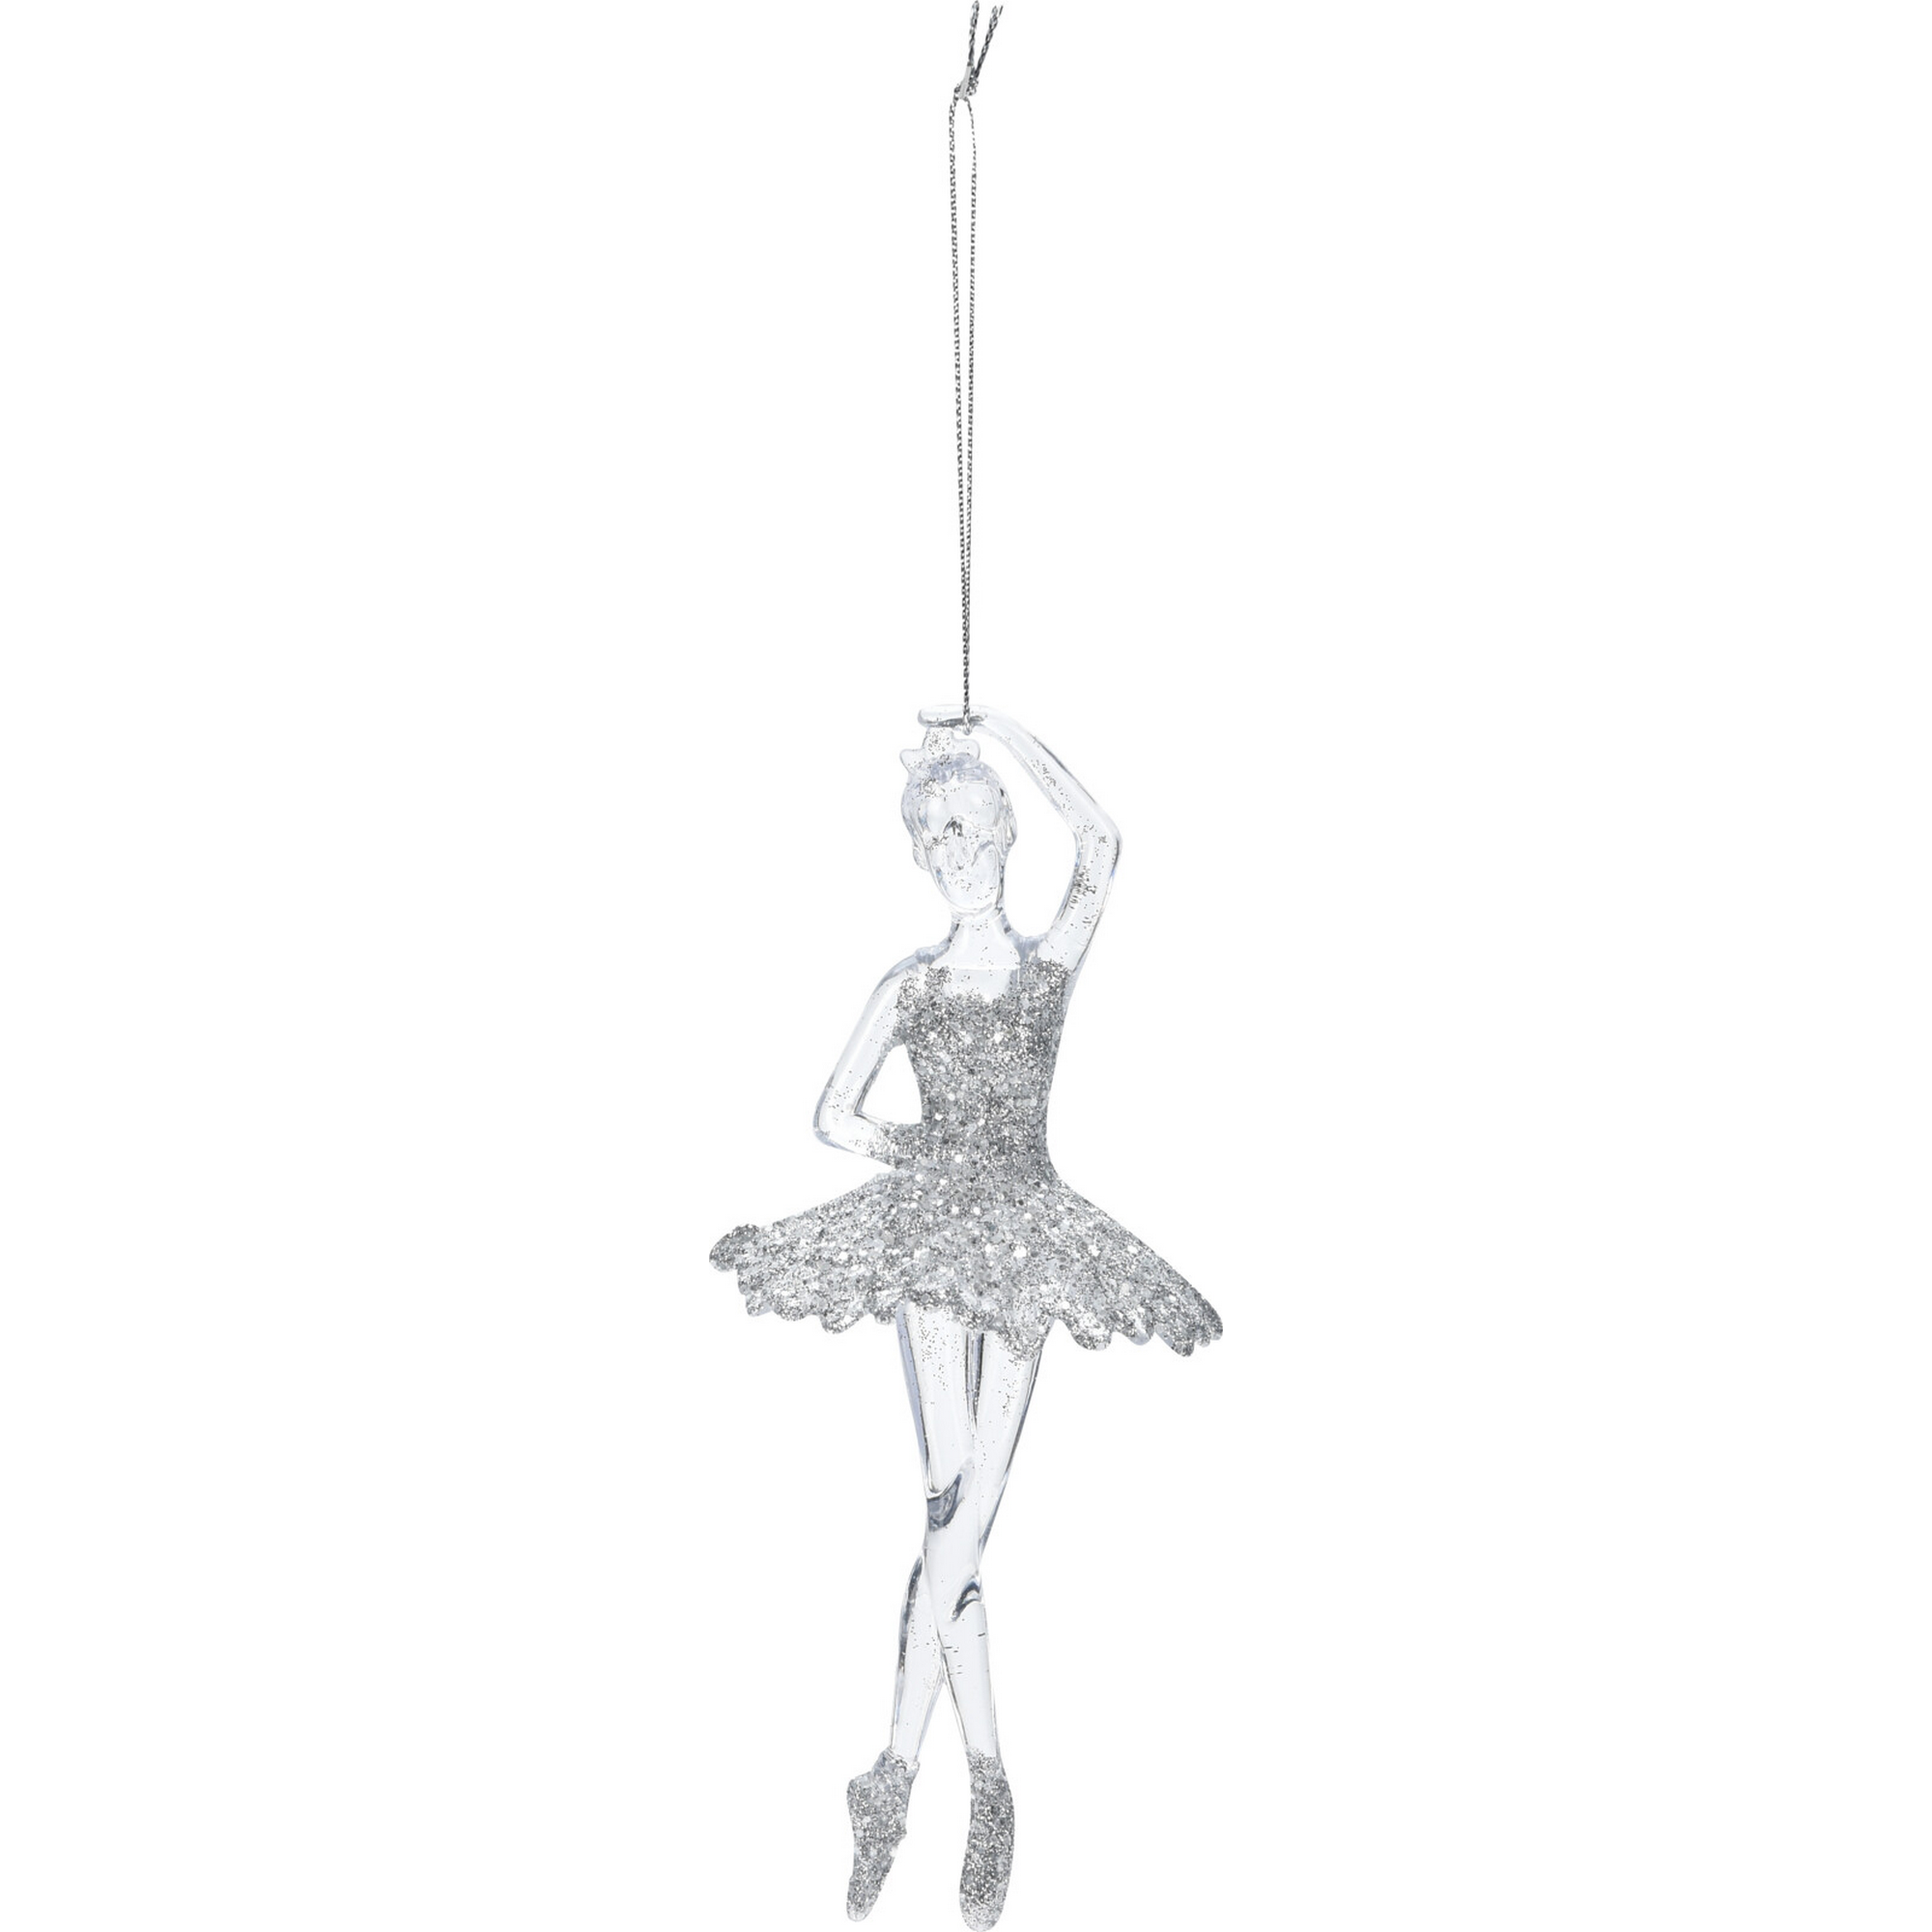 Hängedekoration 'Ballerina' 17 cm, 2 Ausführungen sortiert + product picture